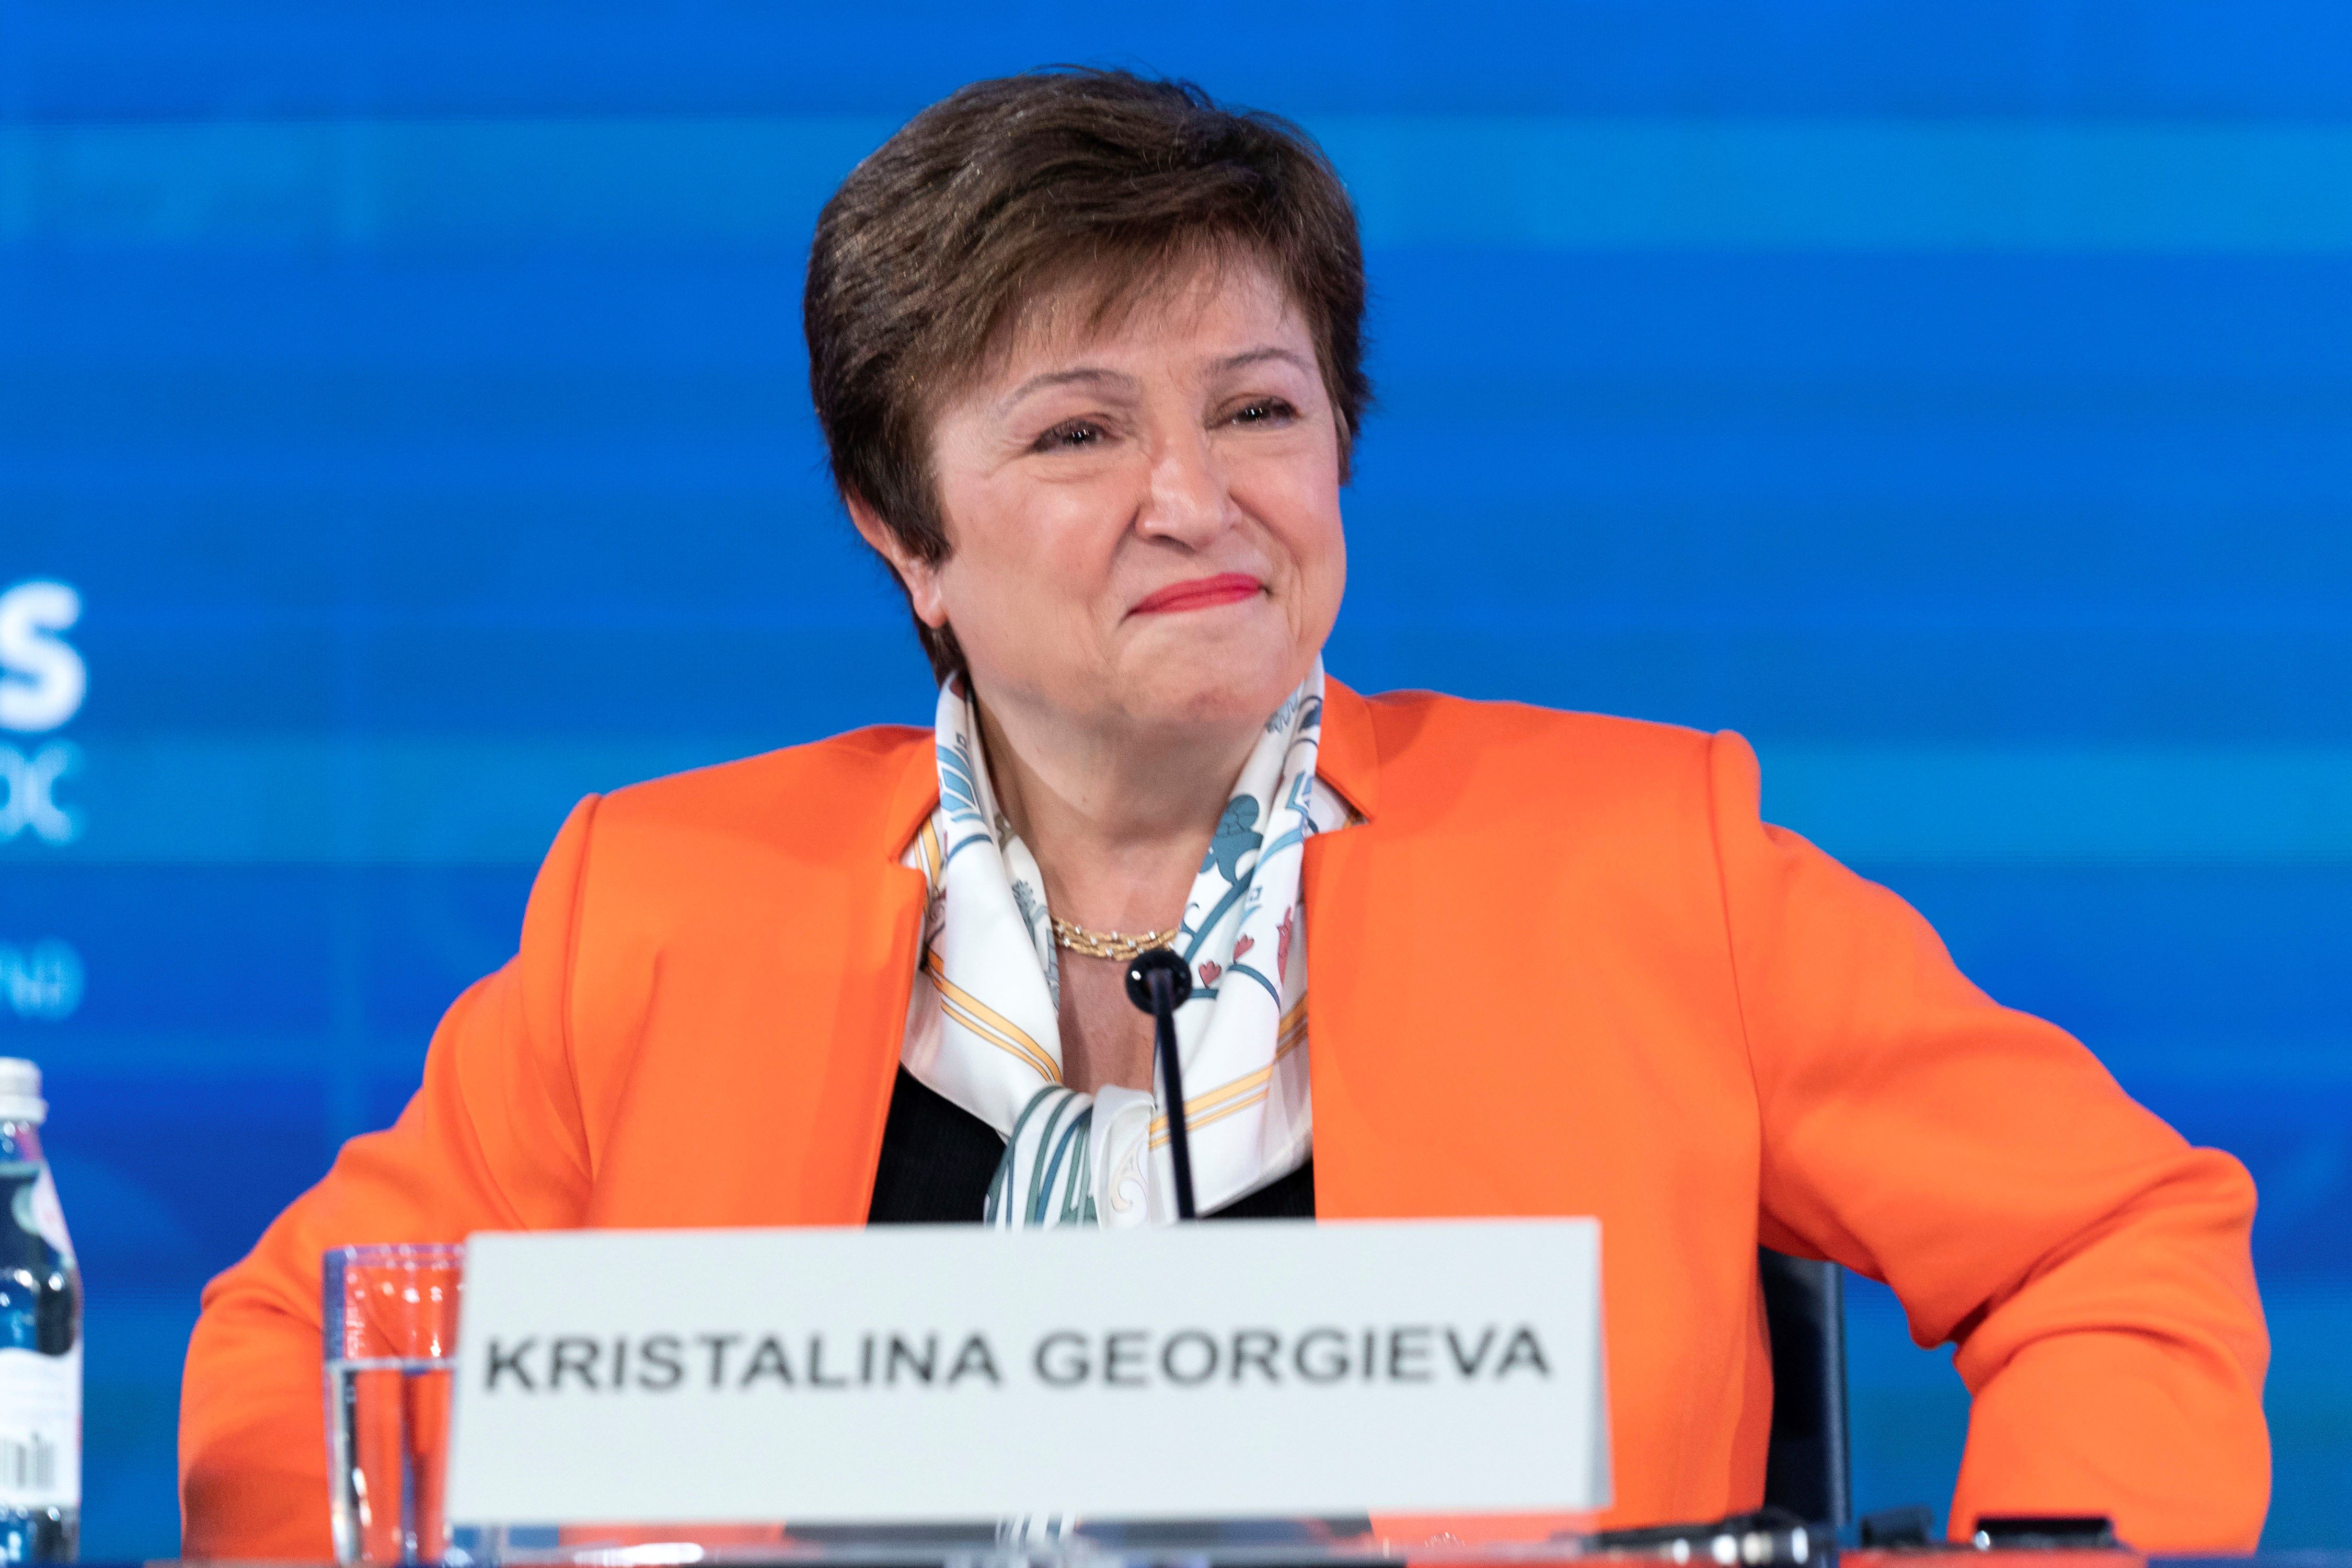 Kristalina Georgieva aseguró que la inflación en Argentina “está bajando más rápido de lo esperado”